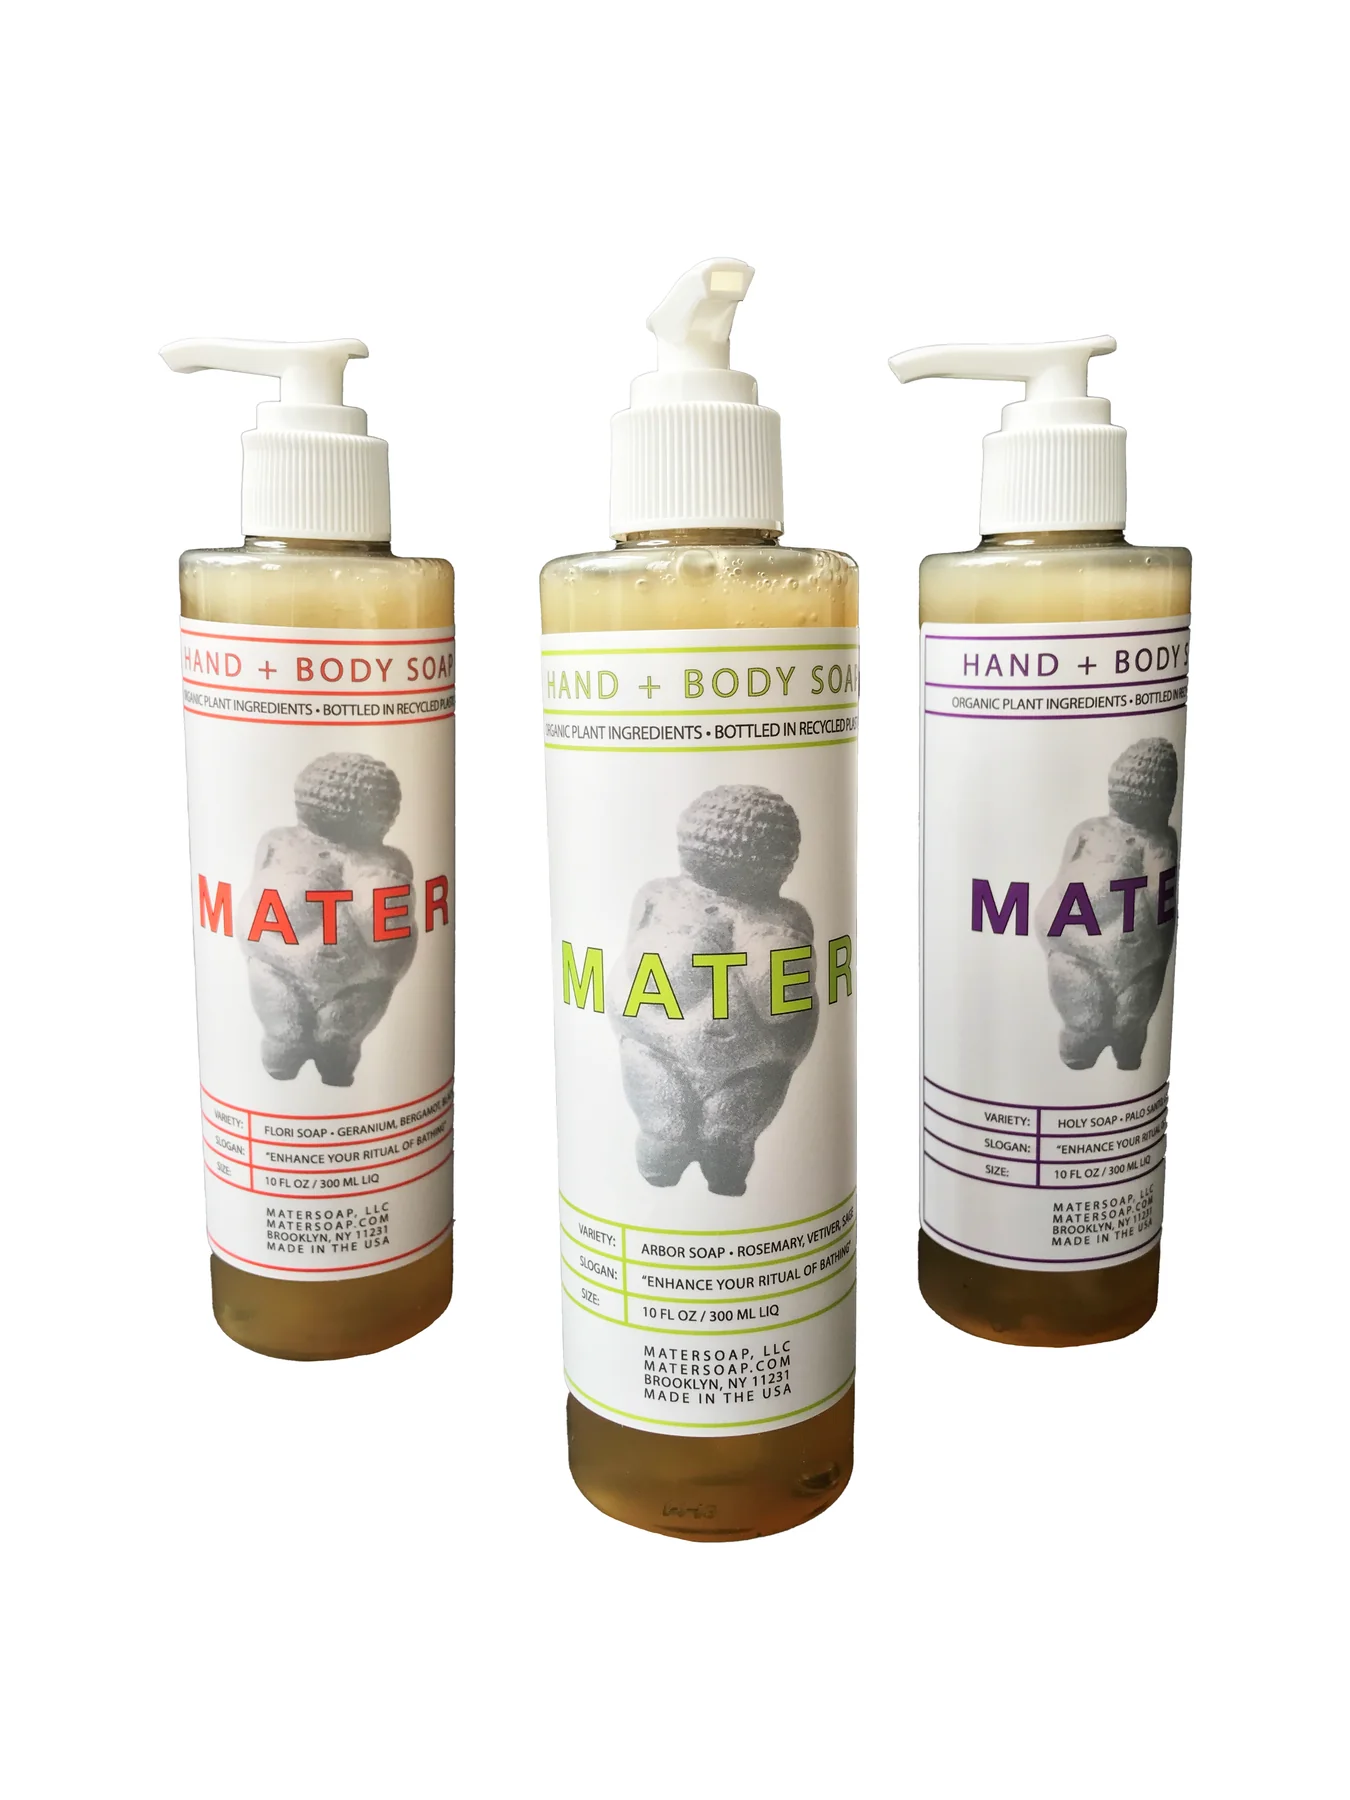 Mater Soap Liquid Hand Soap